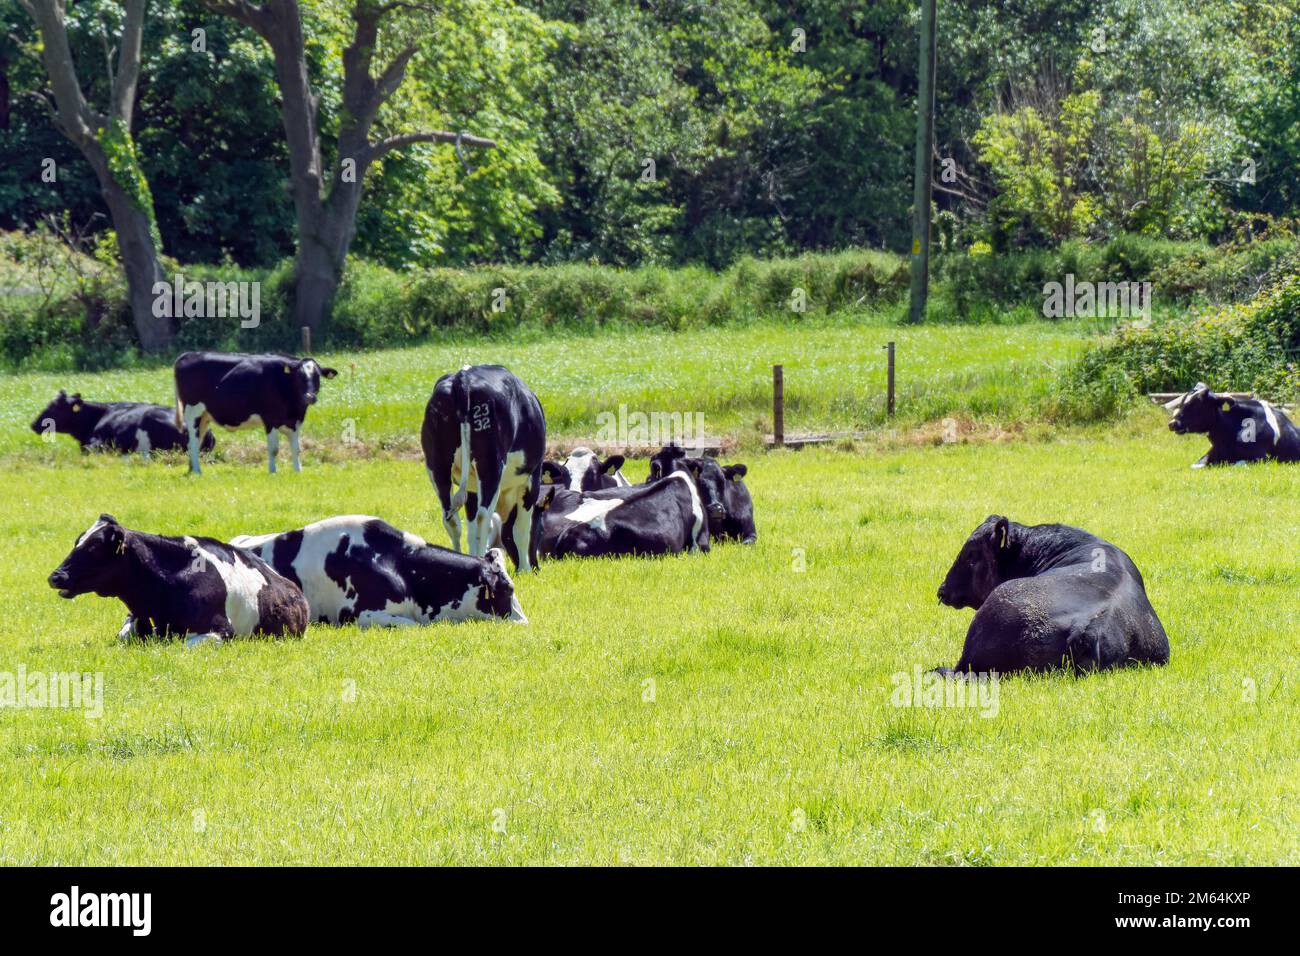 Plusieurs vaches et un gros taureau noir se trouvent sur un pré vert le jour ensoleillé du printemps. Bétail sur pâturage libre. Ferme écologique, paysage. Noir et blanc c Banque D'Images